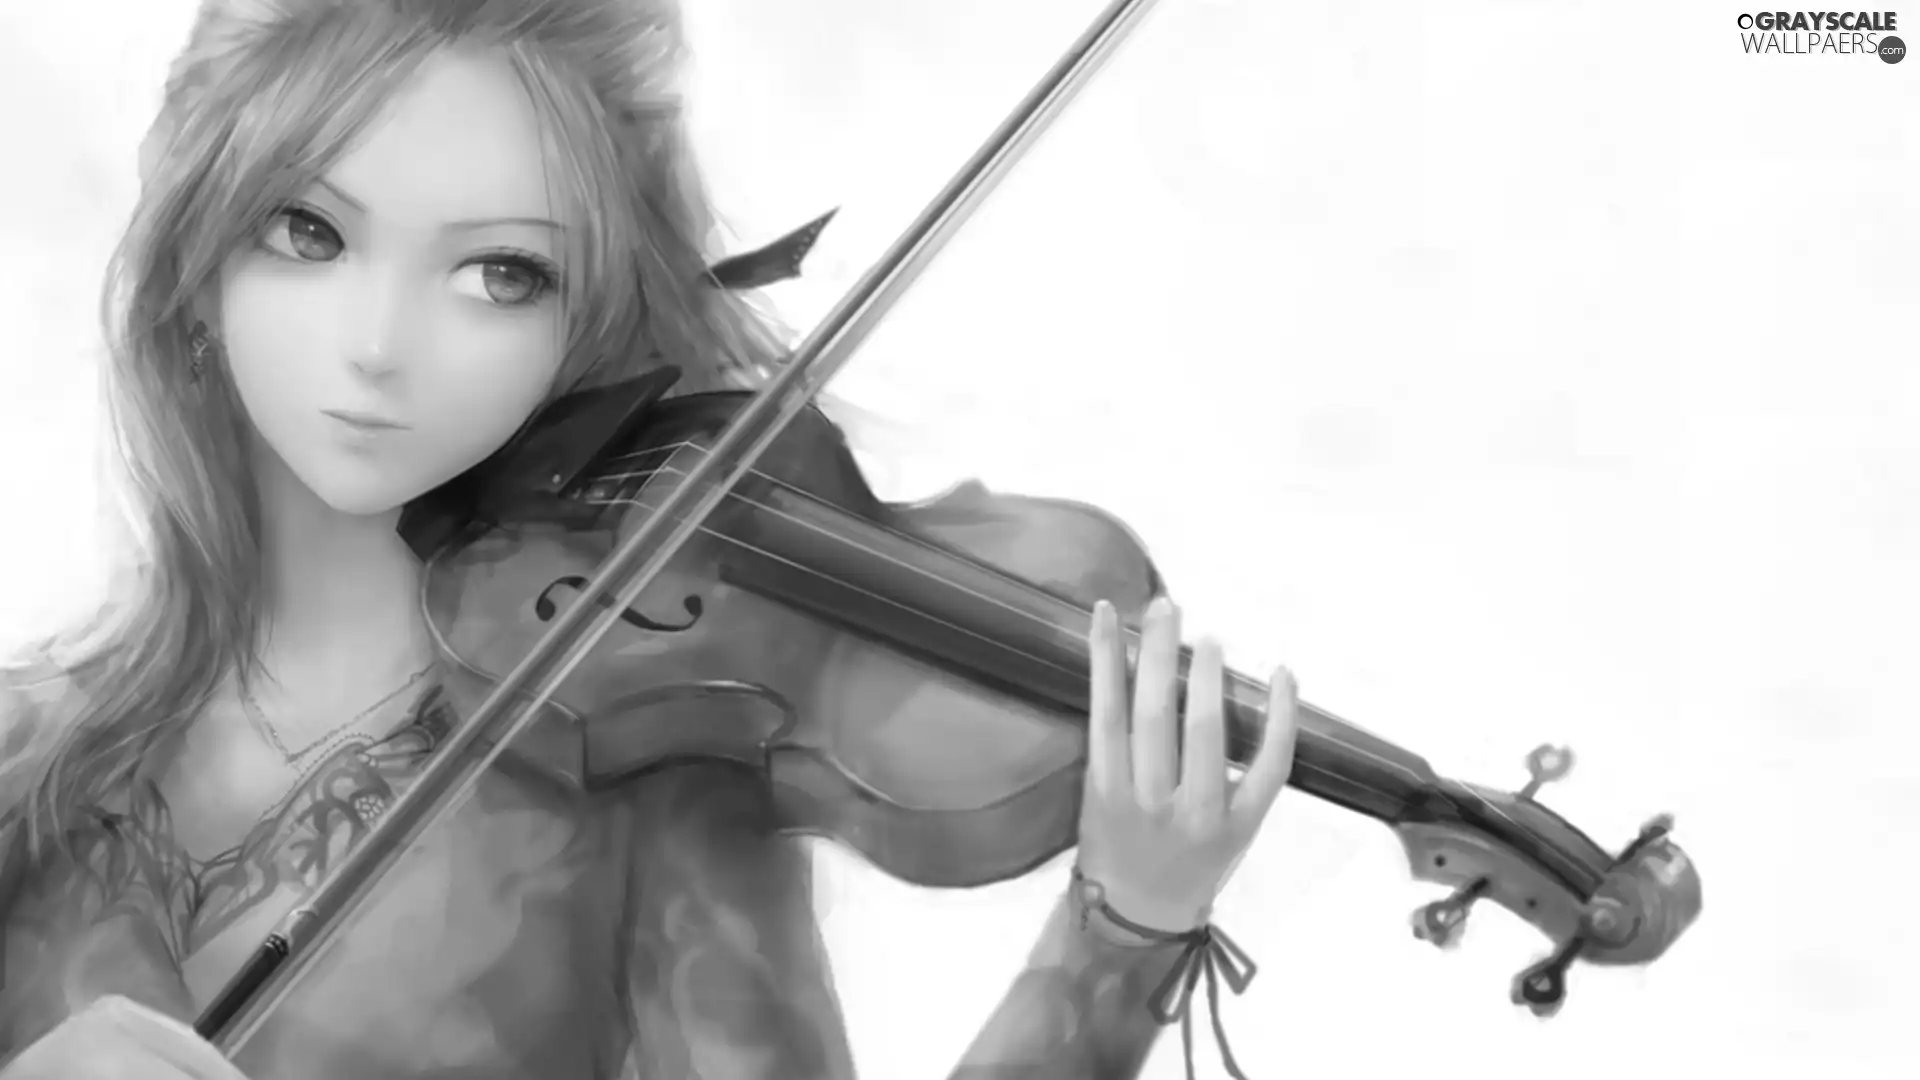 girl, violin